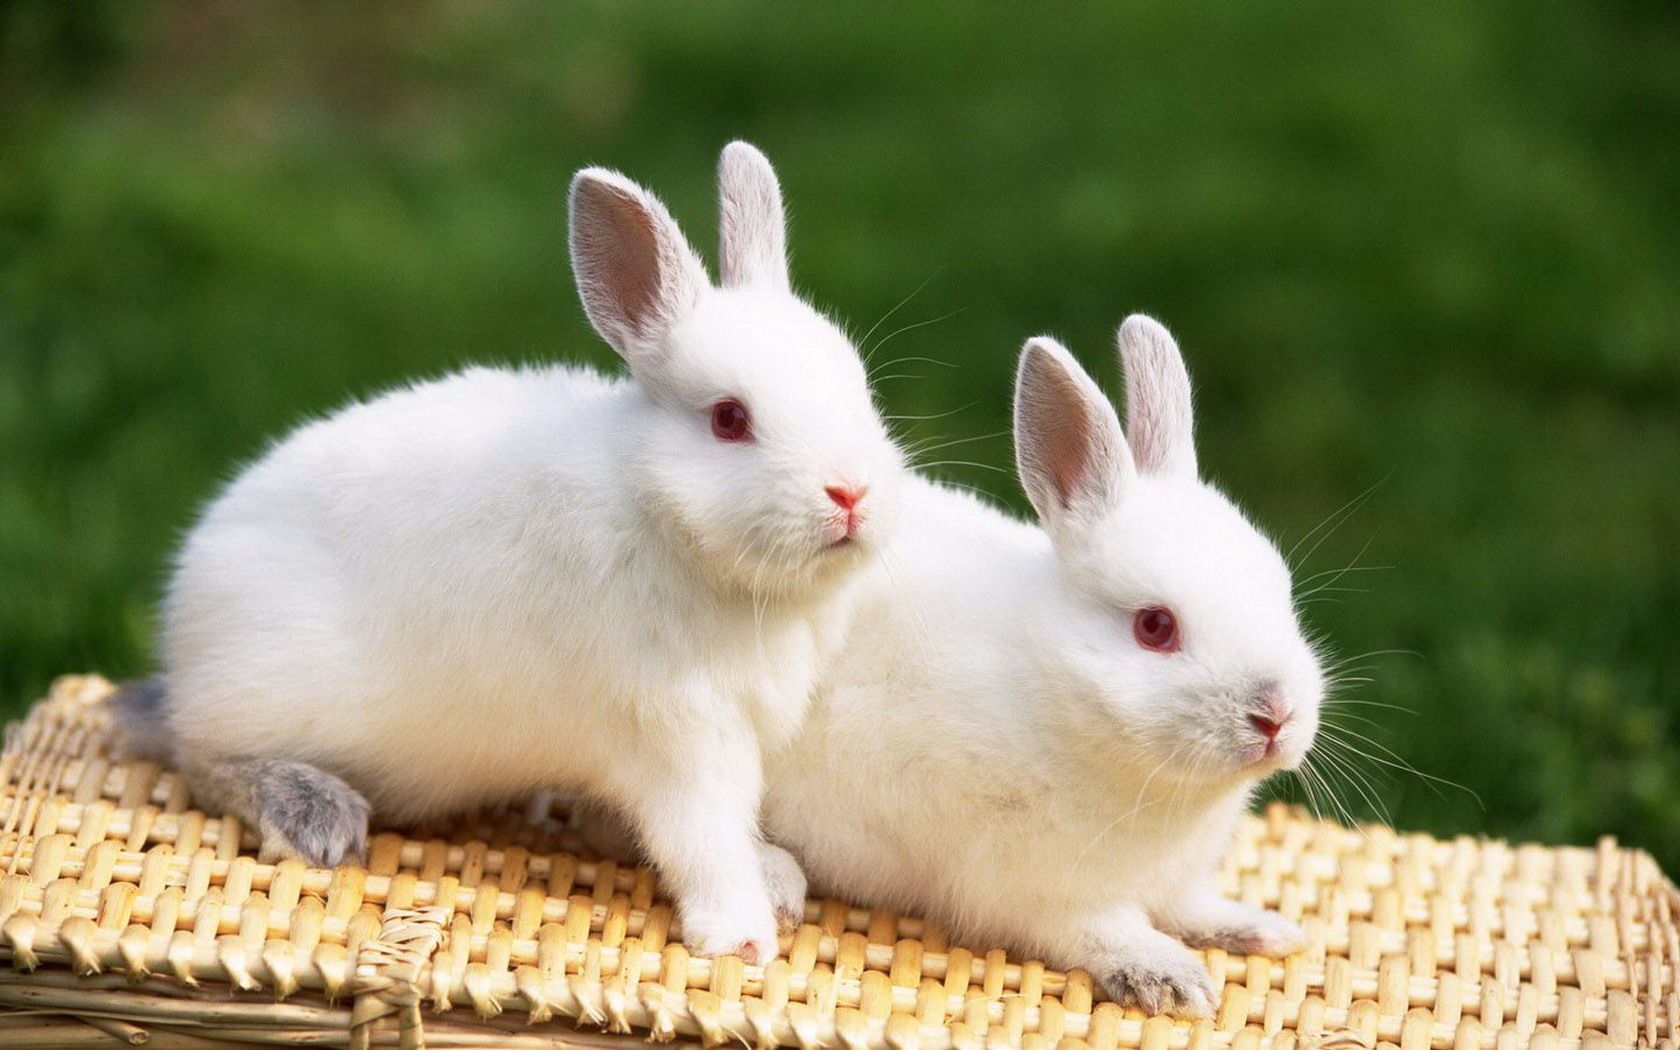 【发兔冷知识】兔子尖叫的声音和这种动物的声音一样!